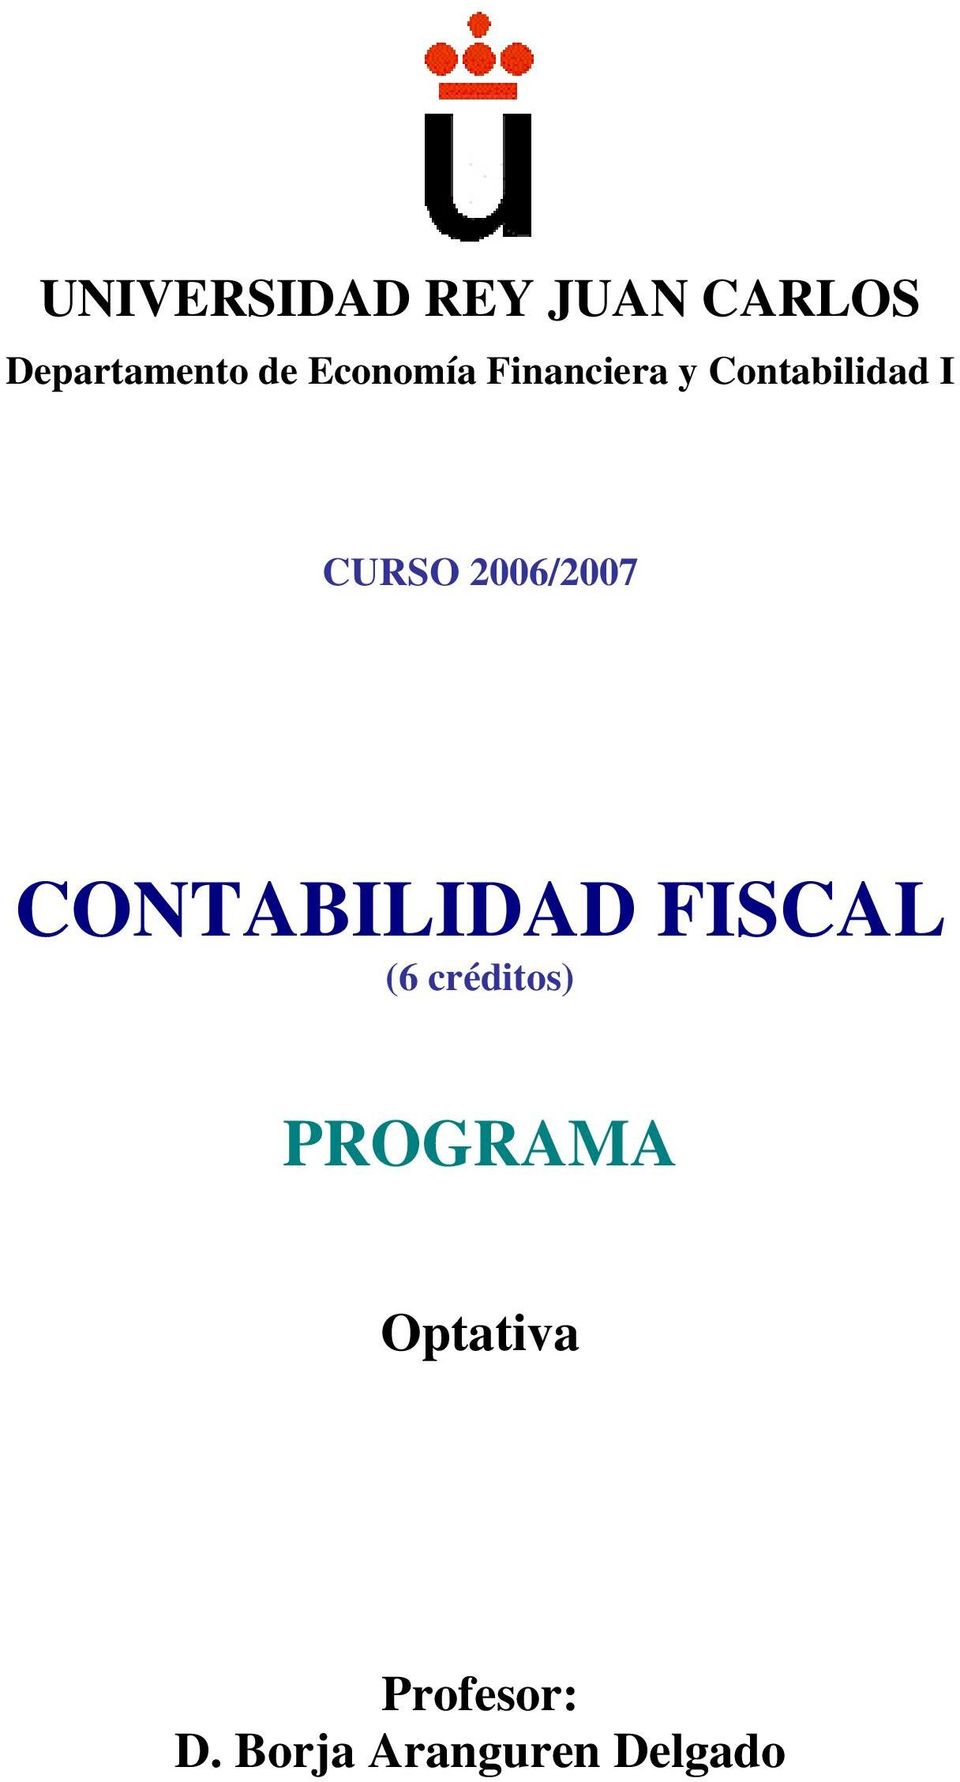 2006/2007 CONTABILIDAD FISCAL (6 créditos)